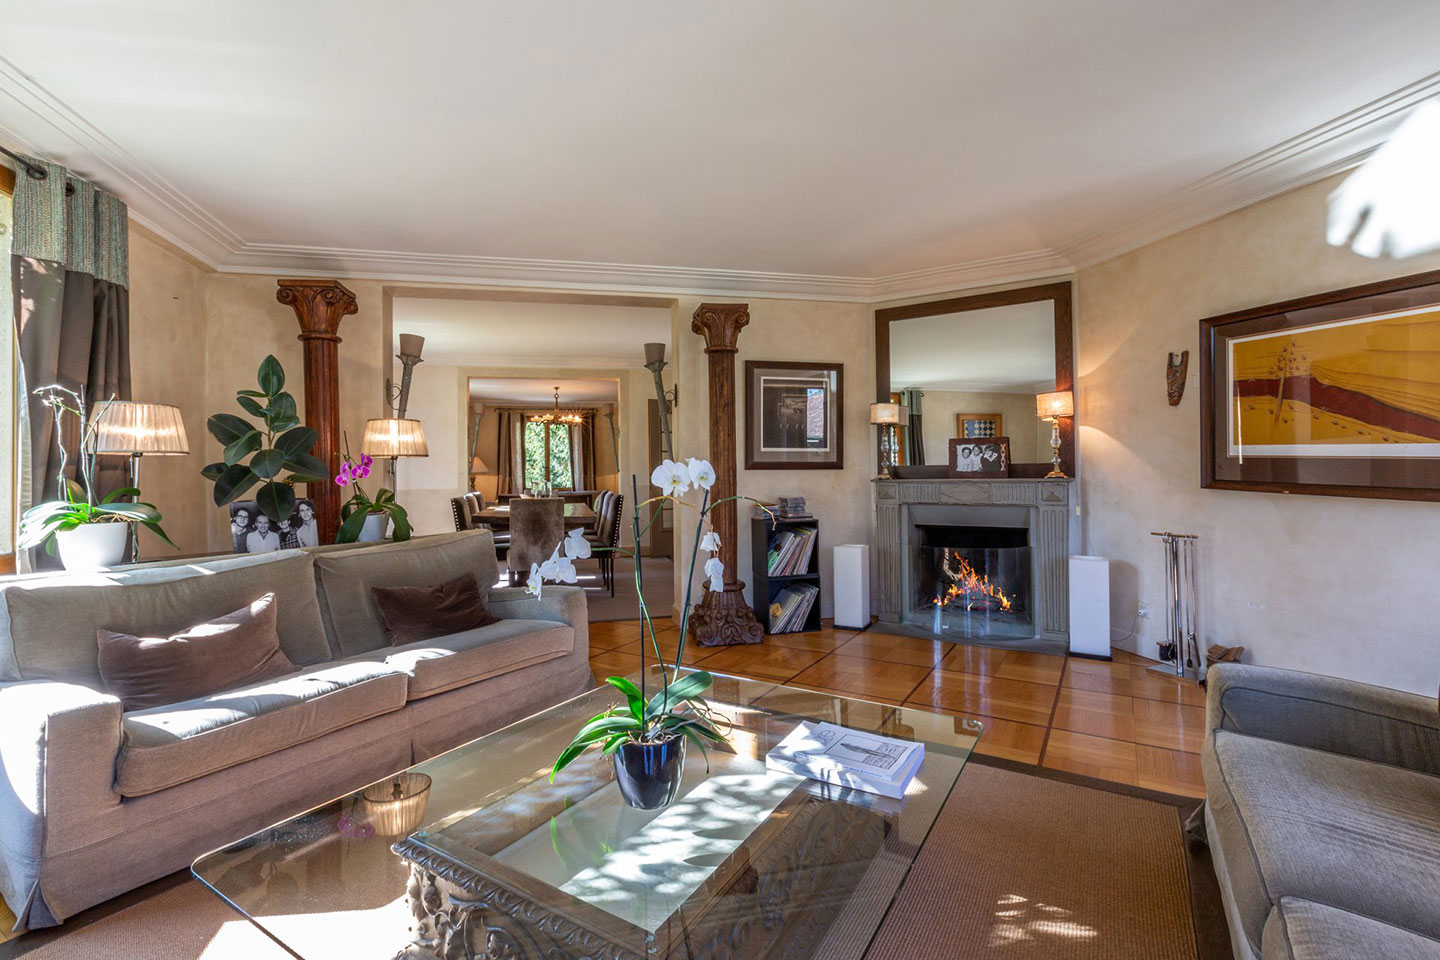 Splendid Property For Sale in Geneva Left Bank, Collonge-Bellerive | Living Room | Presented by Finest International | Finest Residences